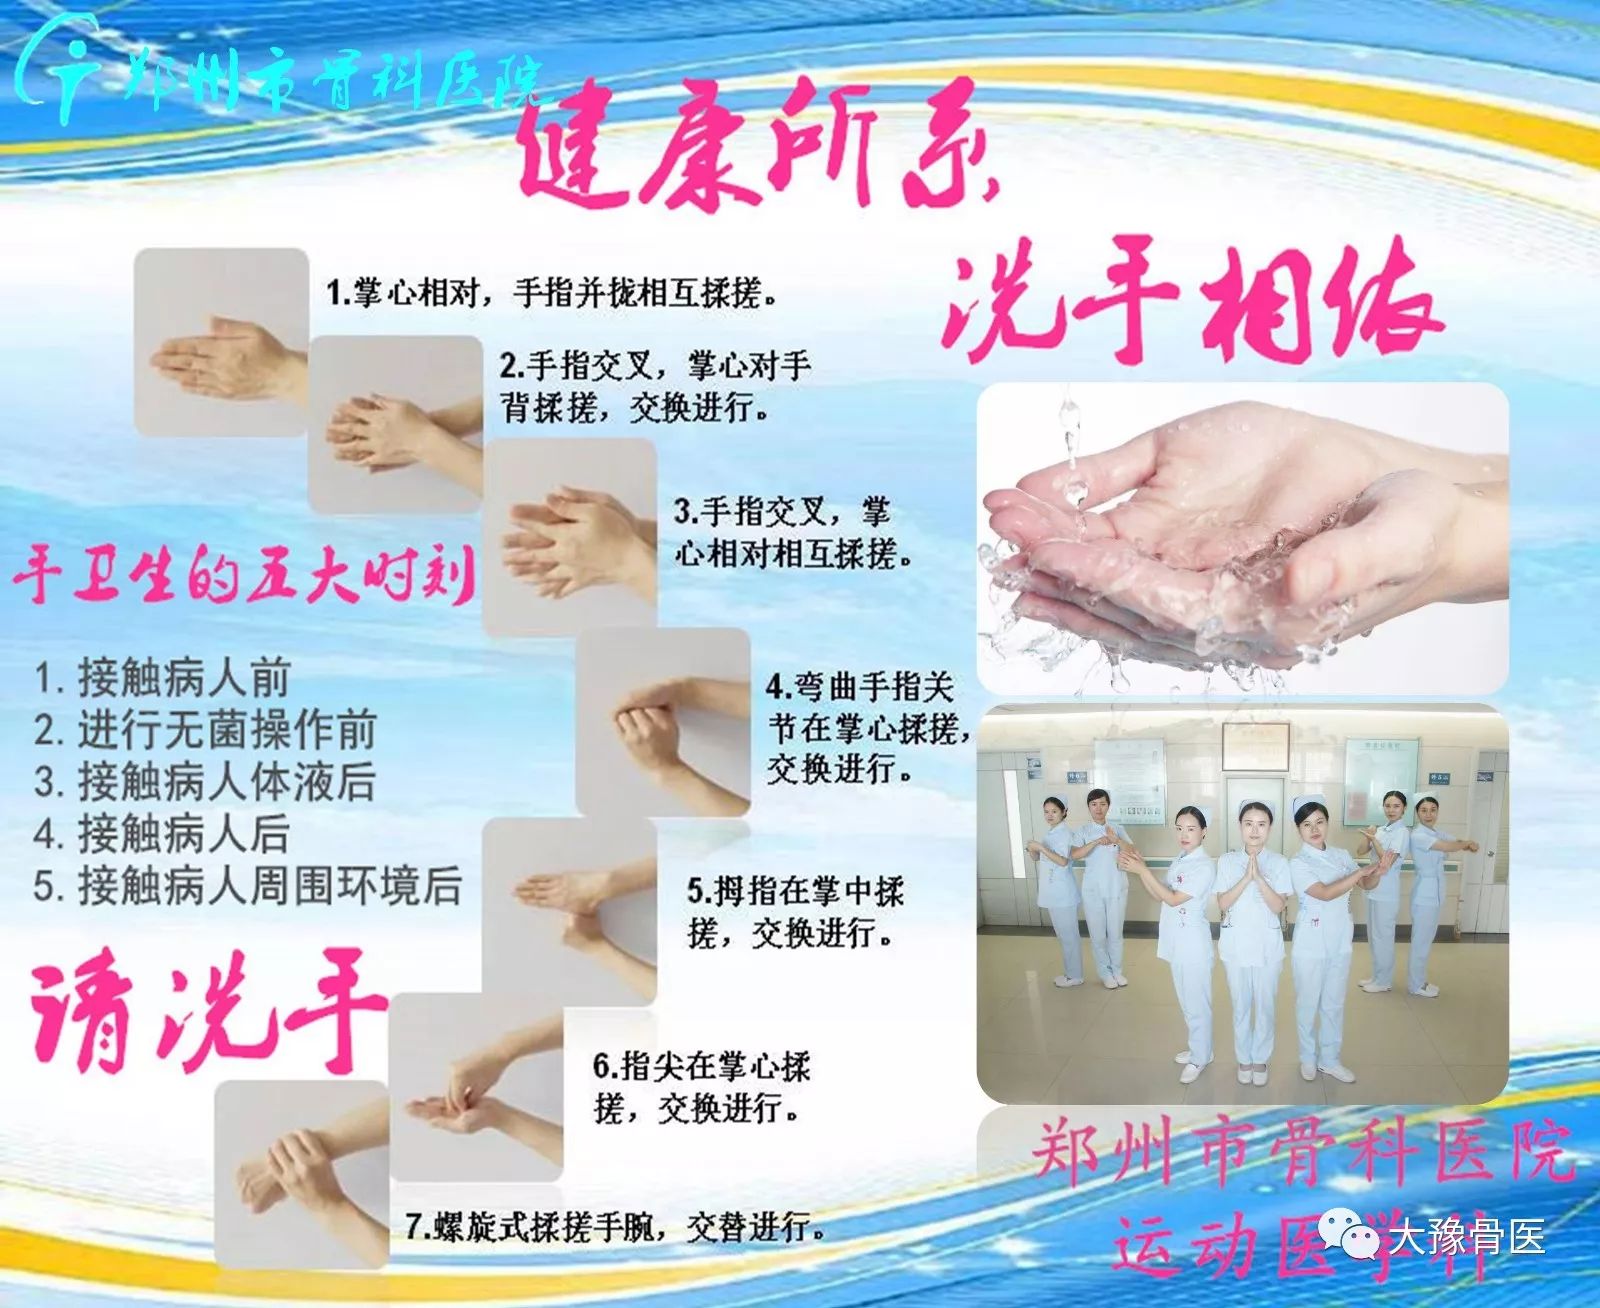 郑州市骨科医院手卫生主题壁报评选活动圆满结束